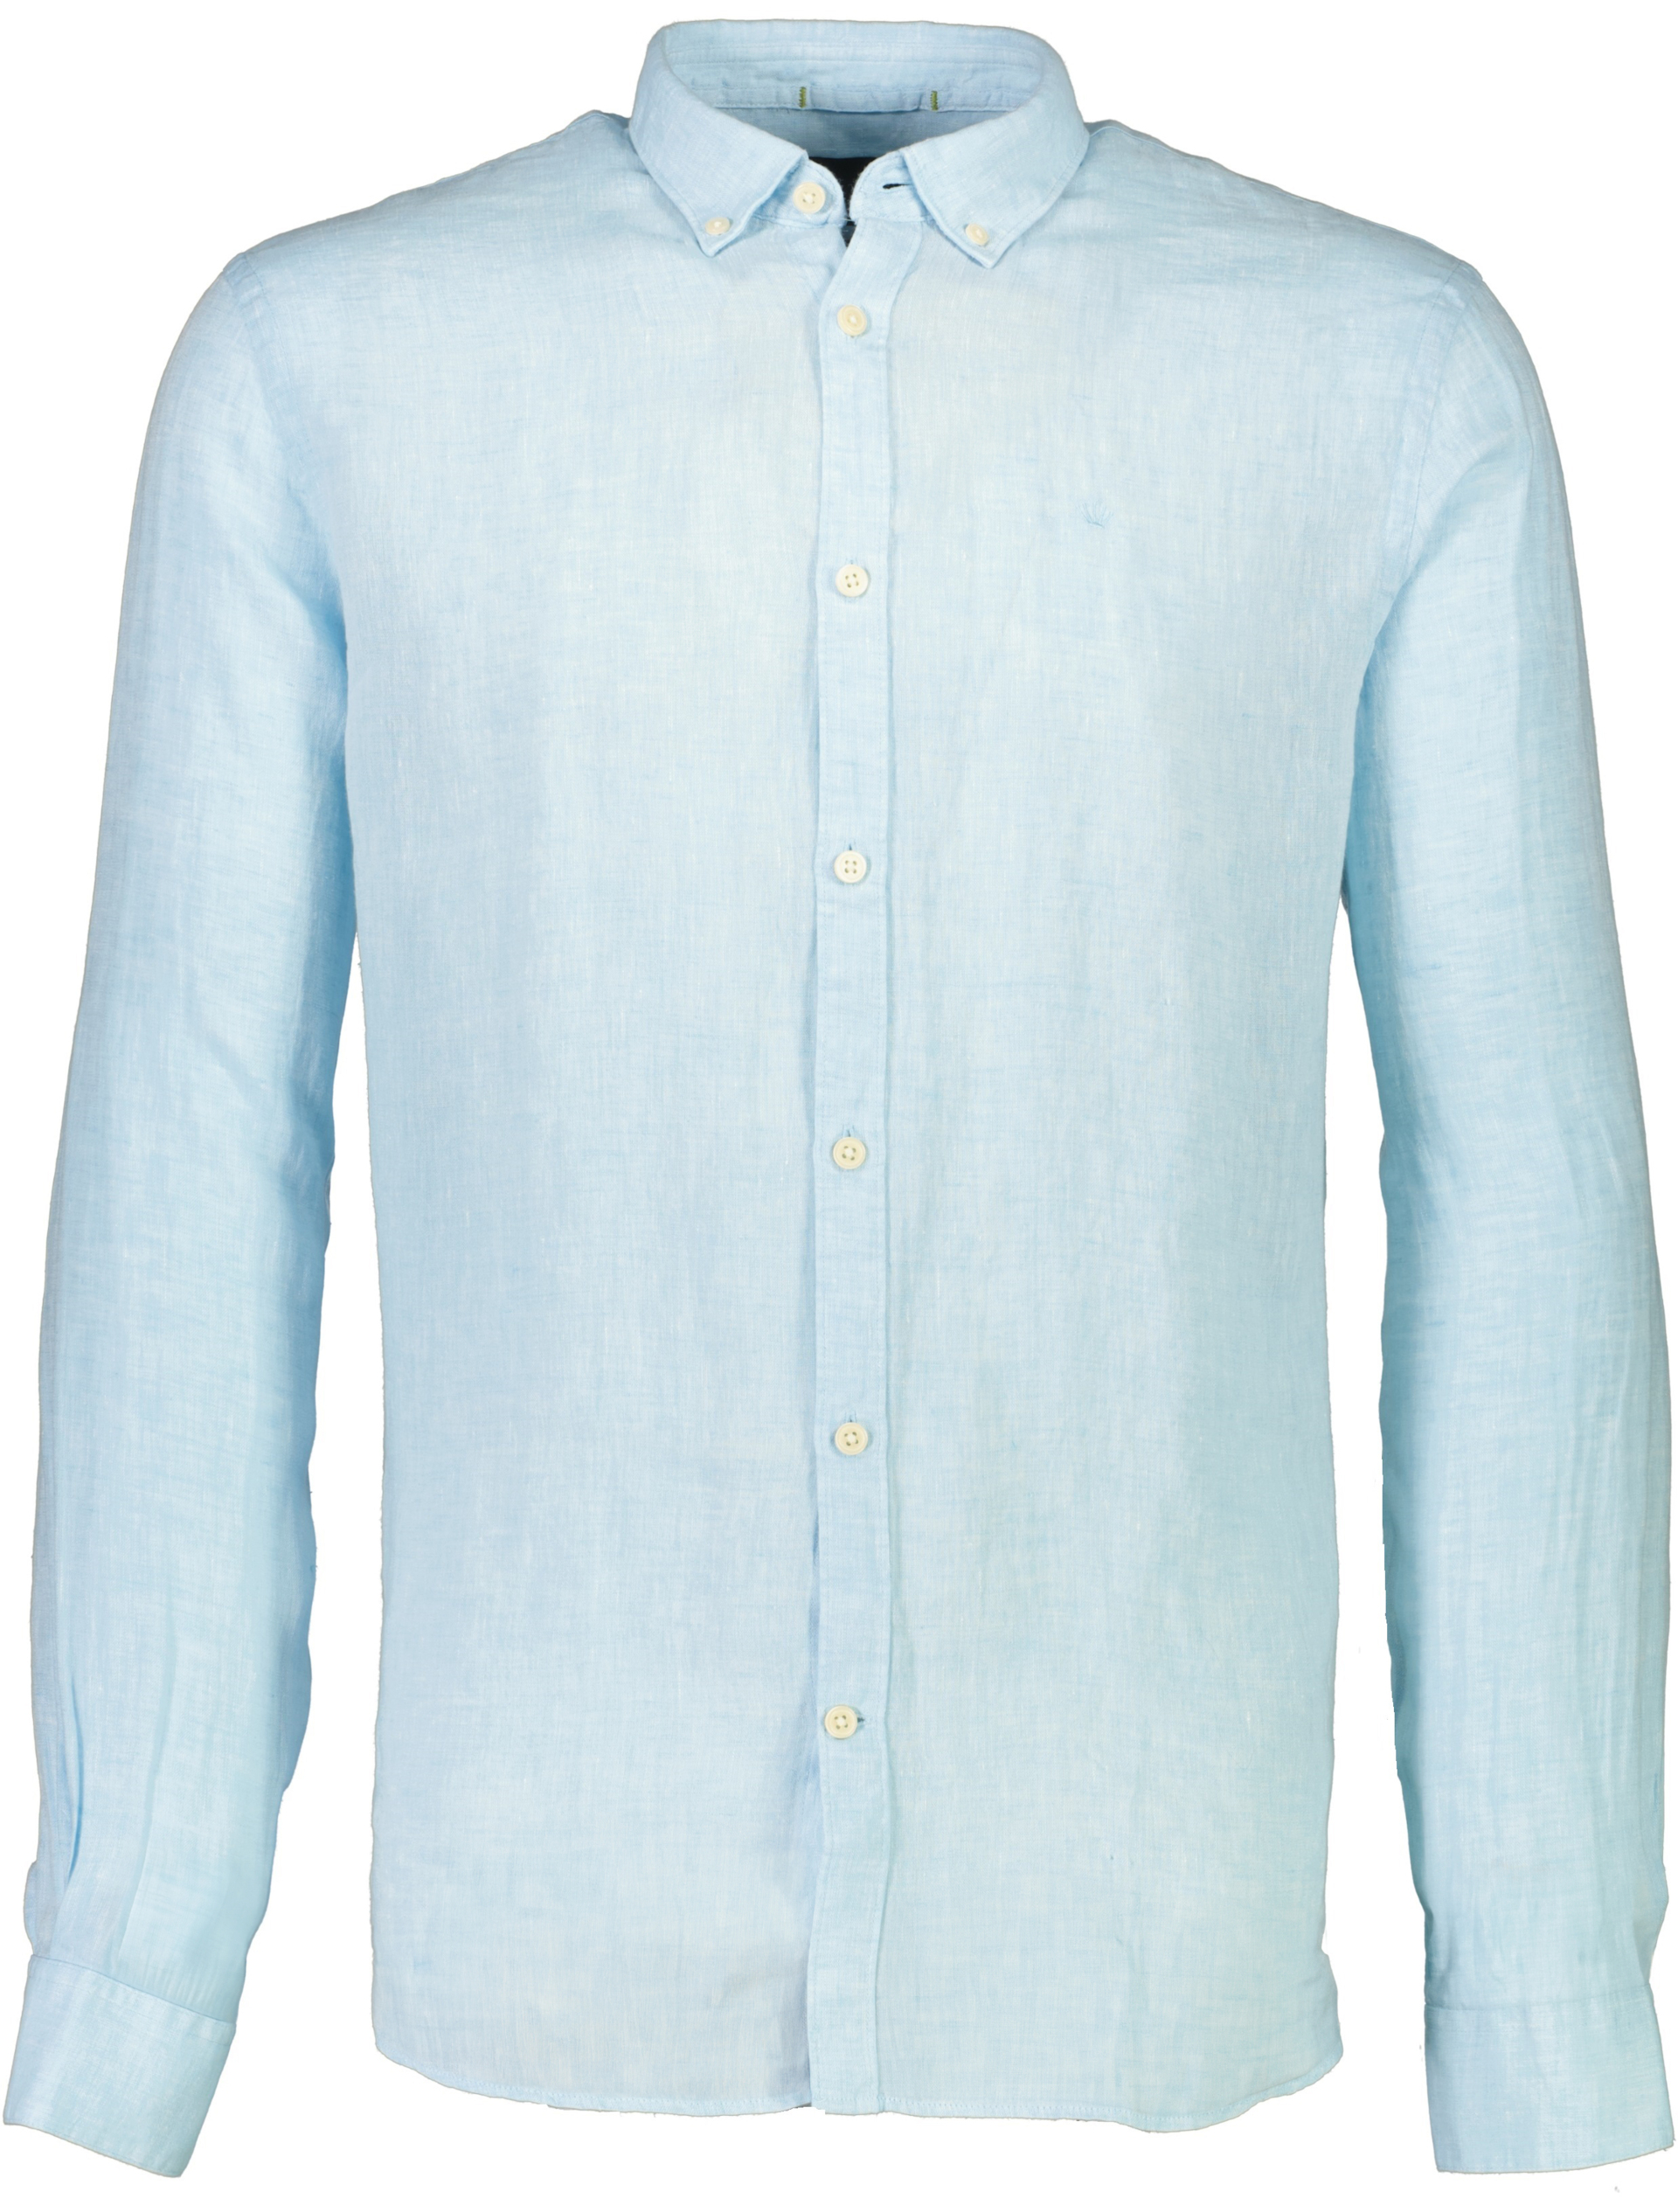 Junk de Luxe Linen shirt blue / lt turquoise mel